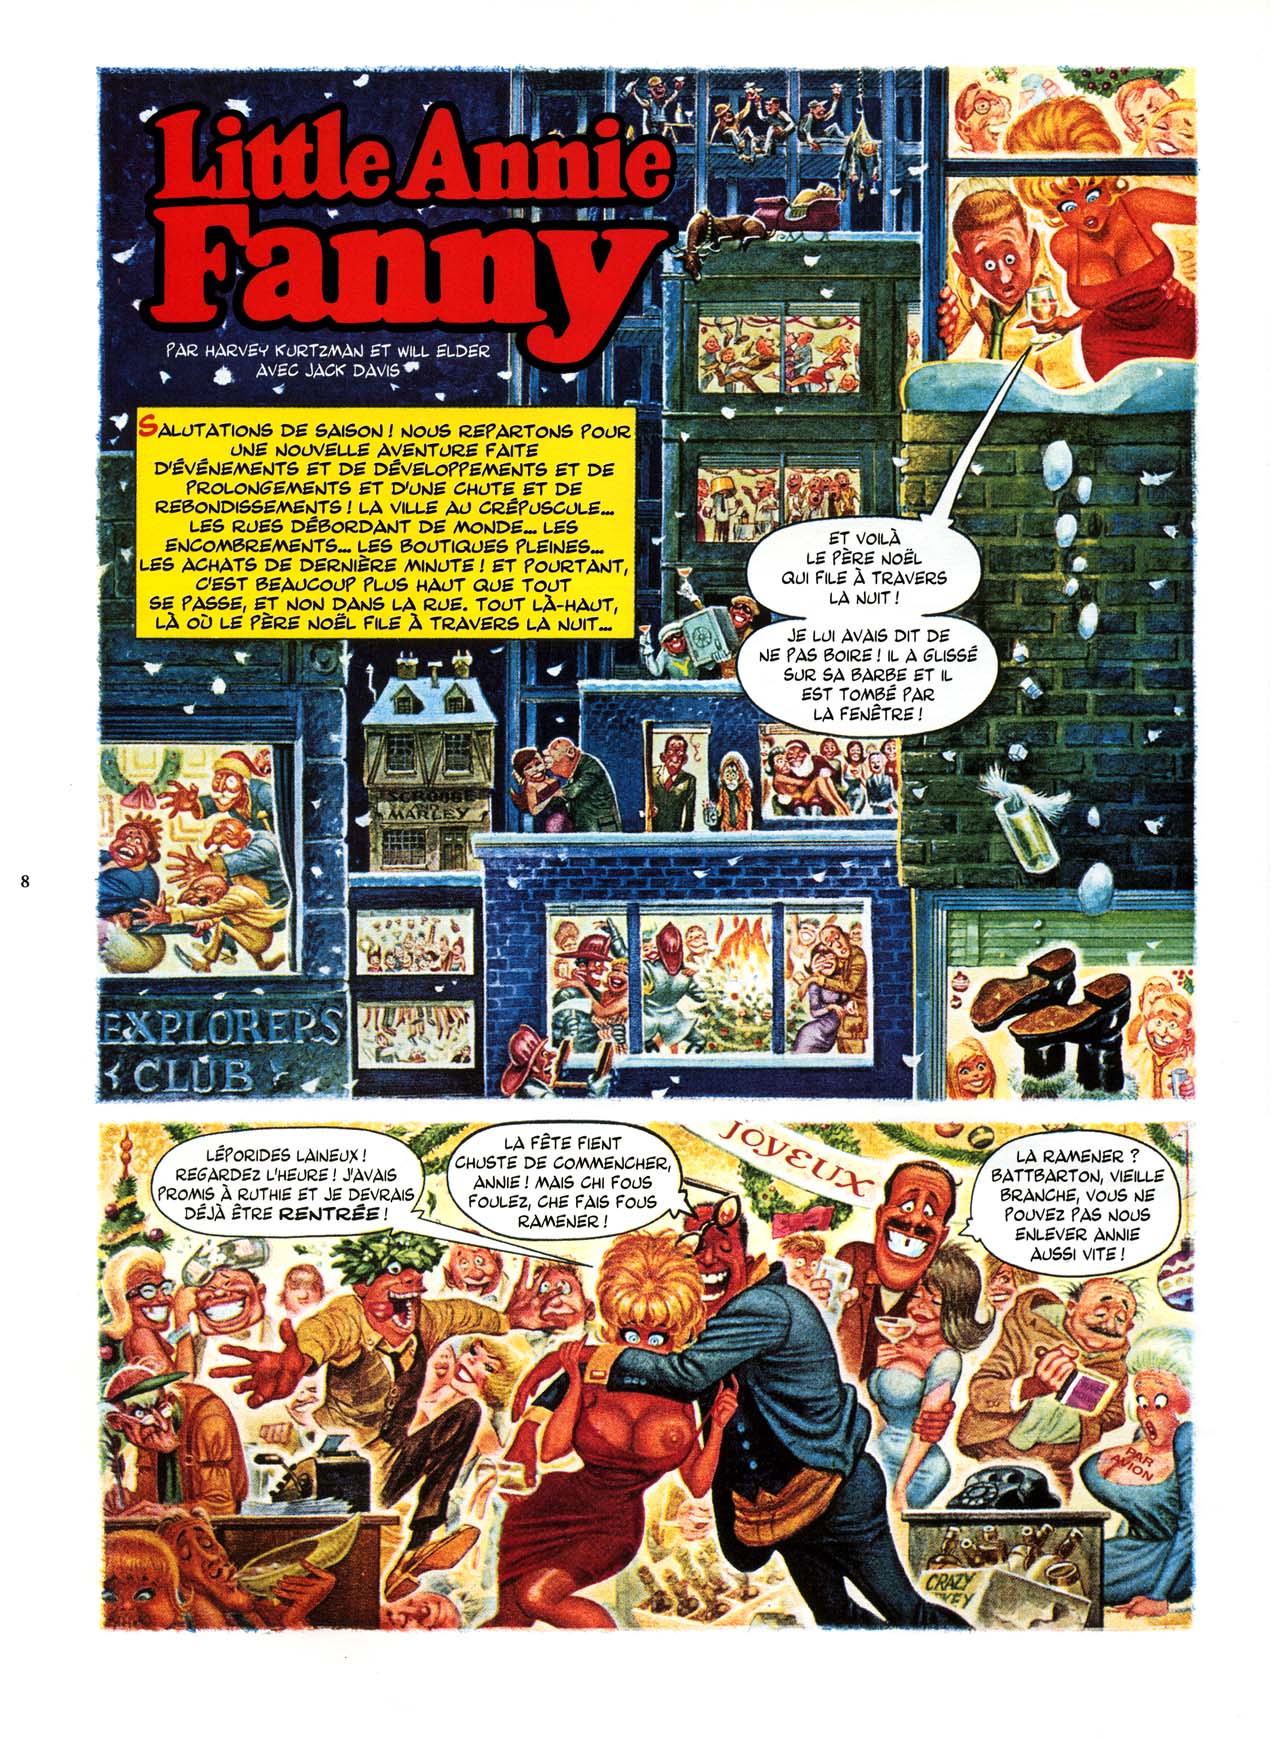 Playboys Little Annie Fanny Vol. 2 - 1965-1970 numero d'image 8